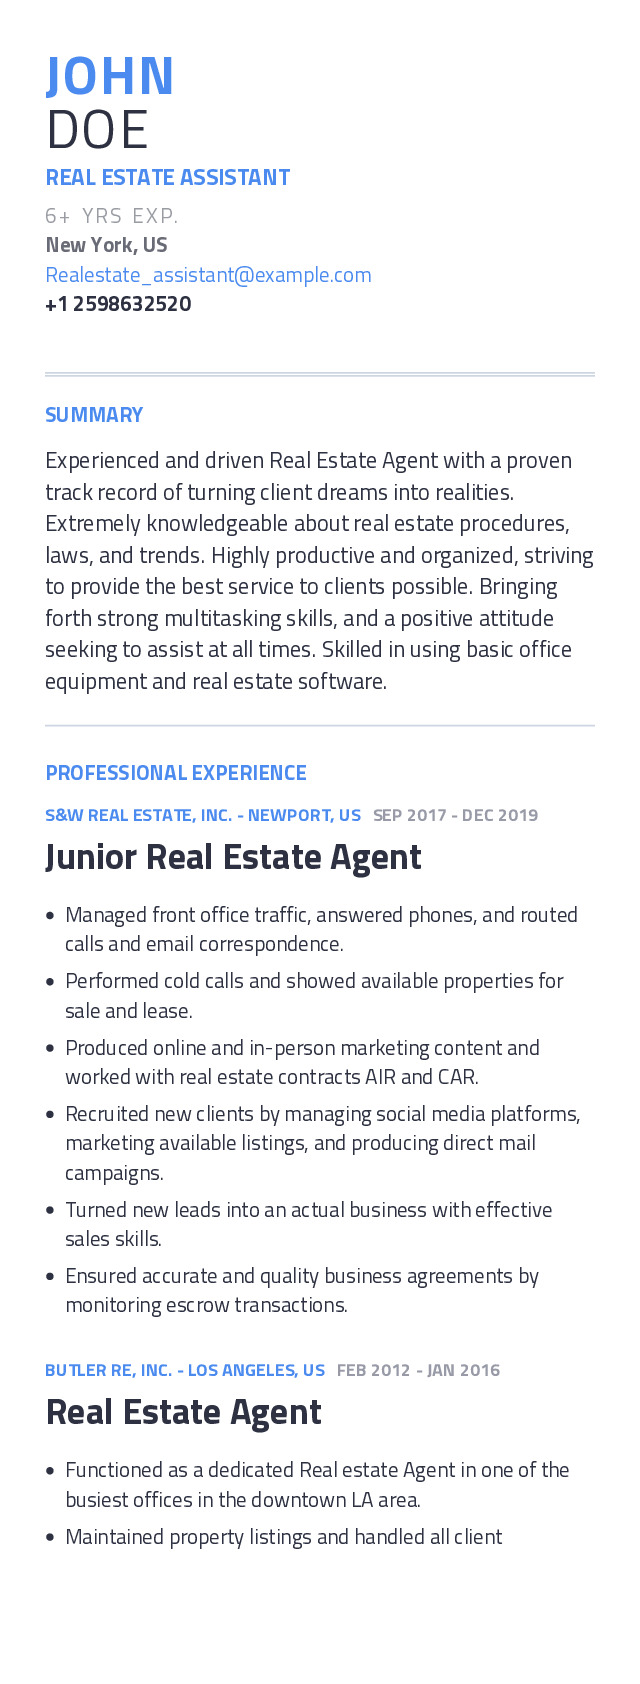 real estate assistant job description for resume